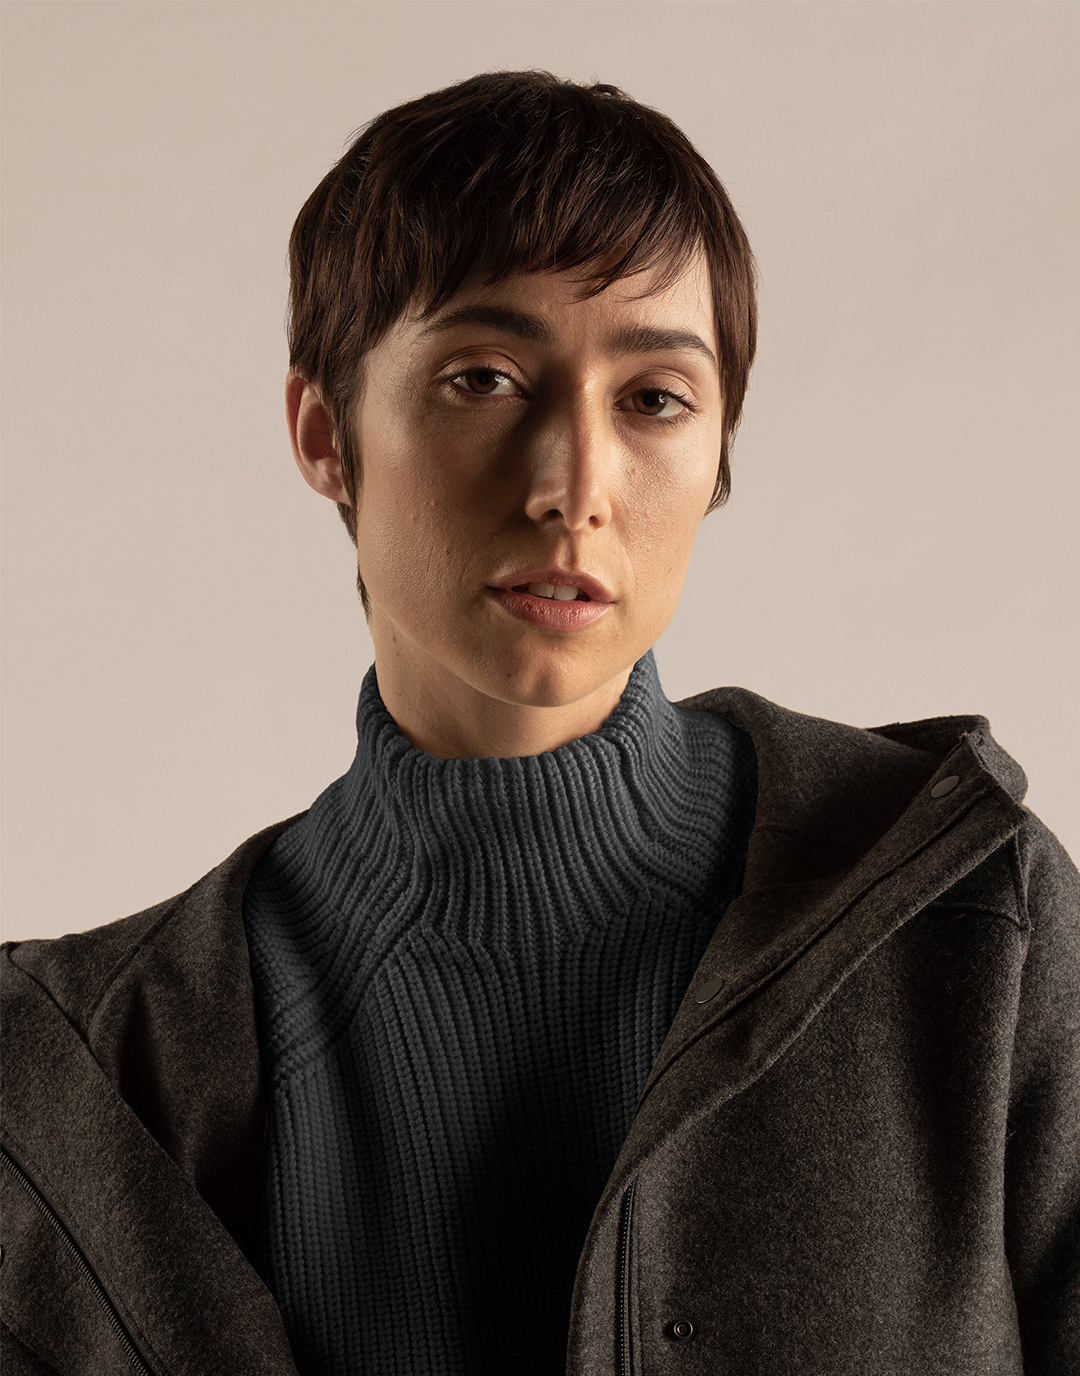 Een staande vrouw die een grijze jas en trui gemaakt van 100% merinowol draagt